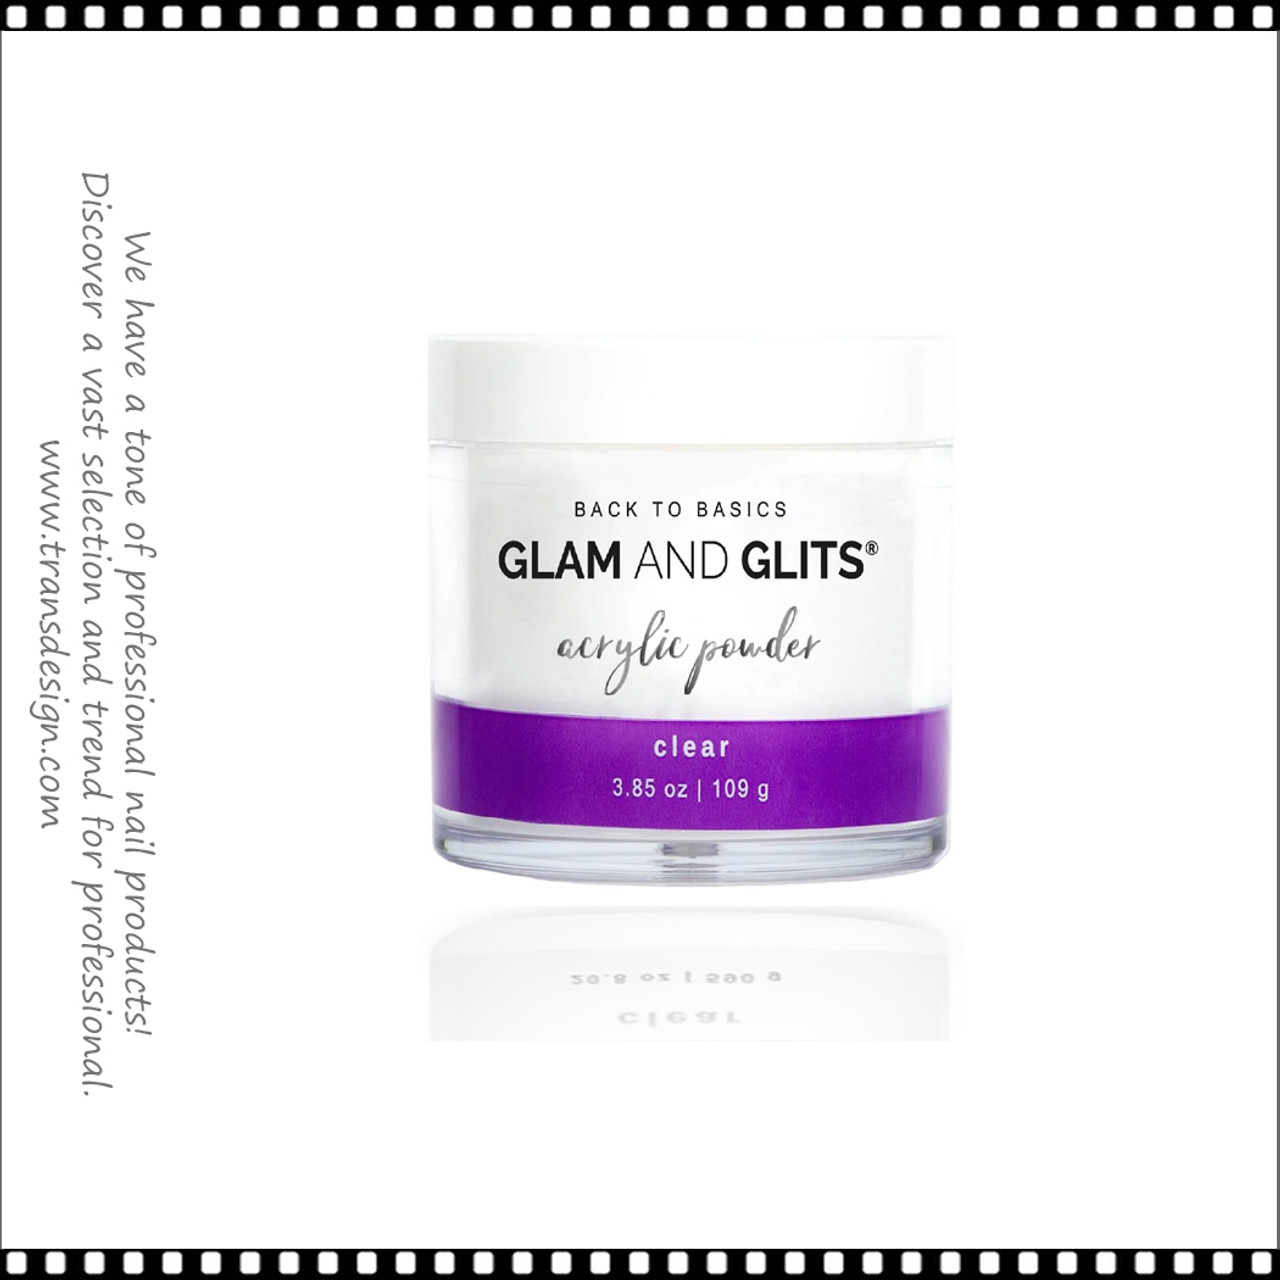 GLAM AND GLITS Powder Clear 3.85oz. - TDI, Inc